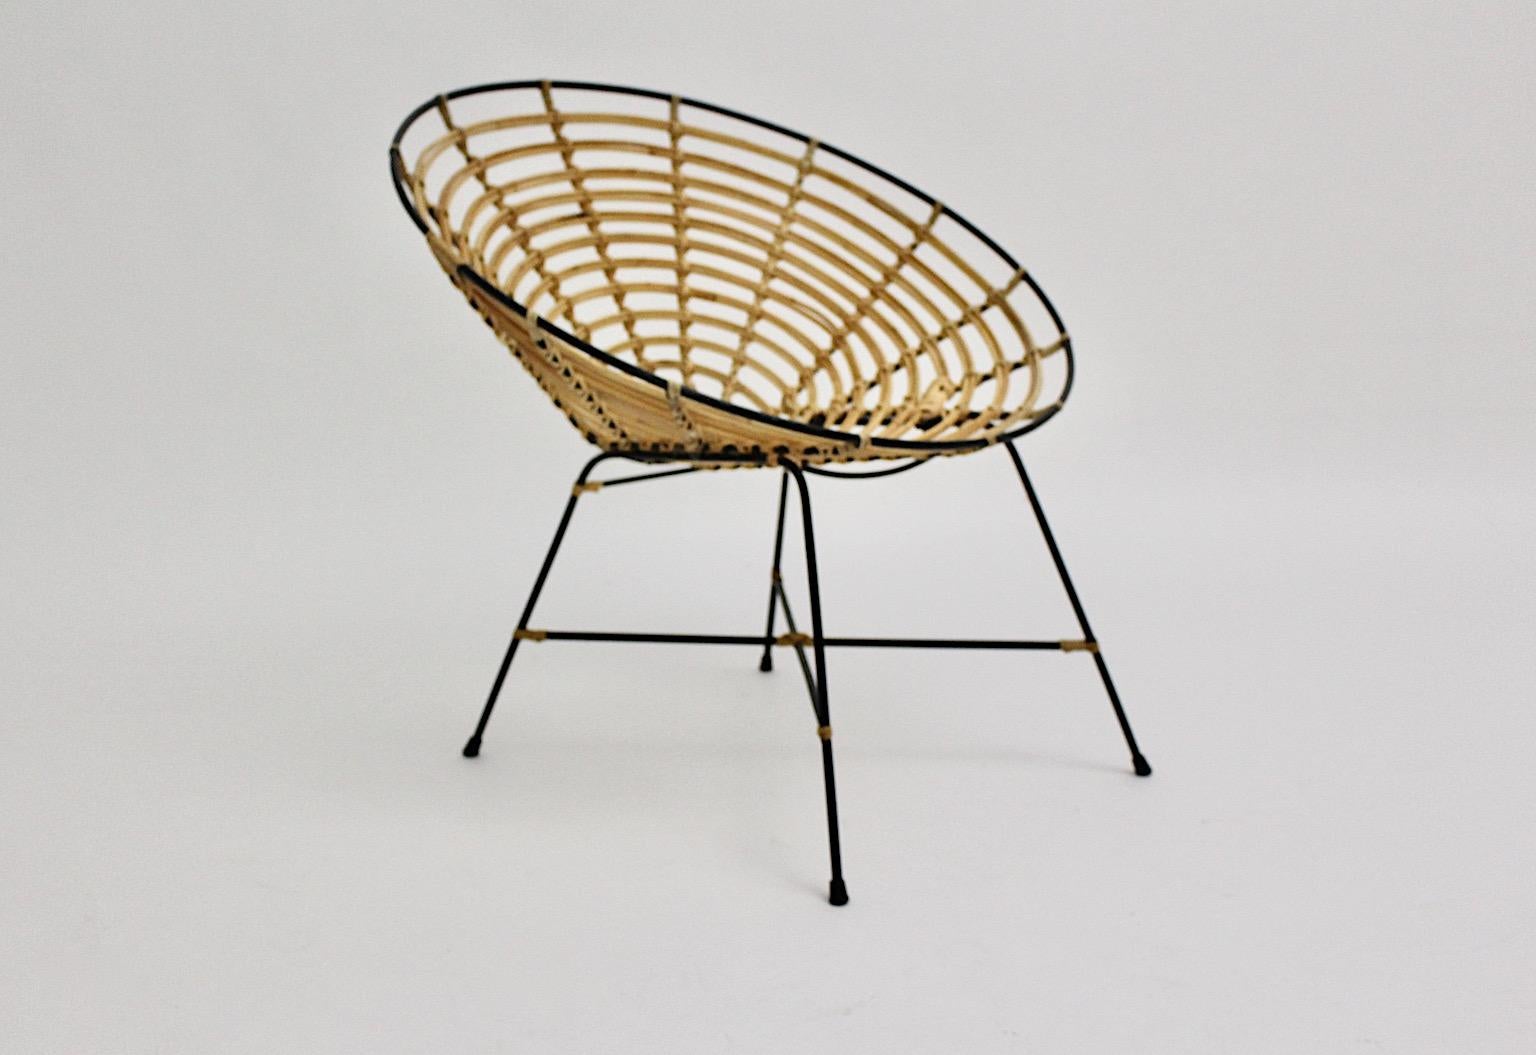 Une chaise longue vintage en bambou et rotin de couleur marron, conçue et fabriquée en Italie dans les années 1960.
La coque d'assise en bambou ajouré de style Riviera et la structure en métal laqué noir complètent le design vivable et